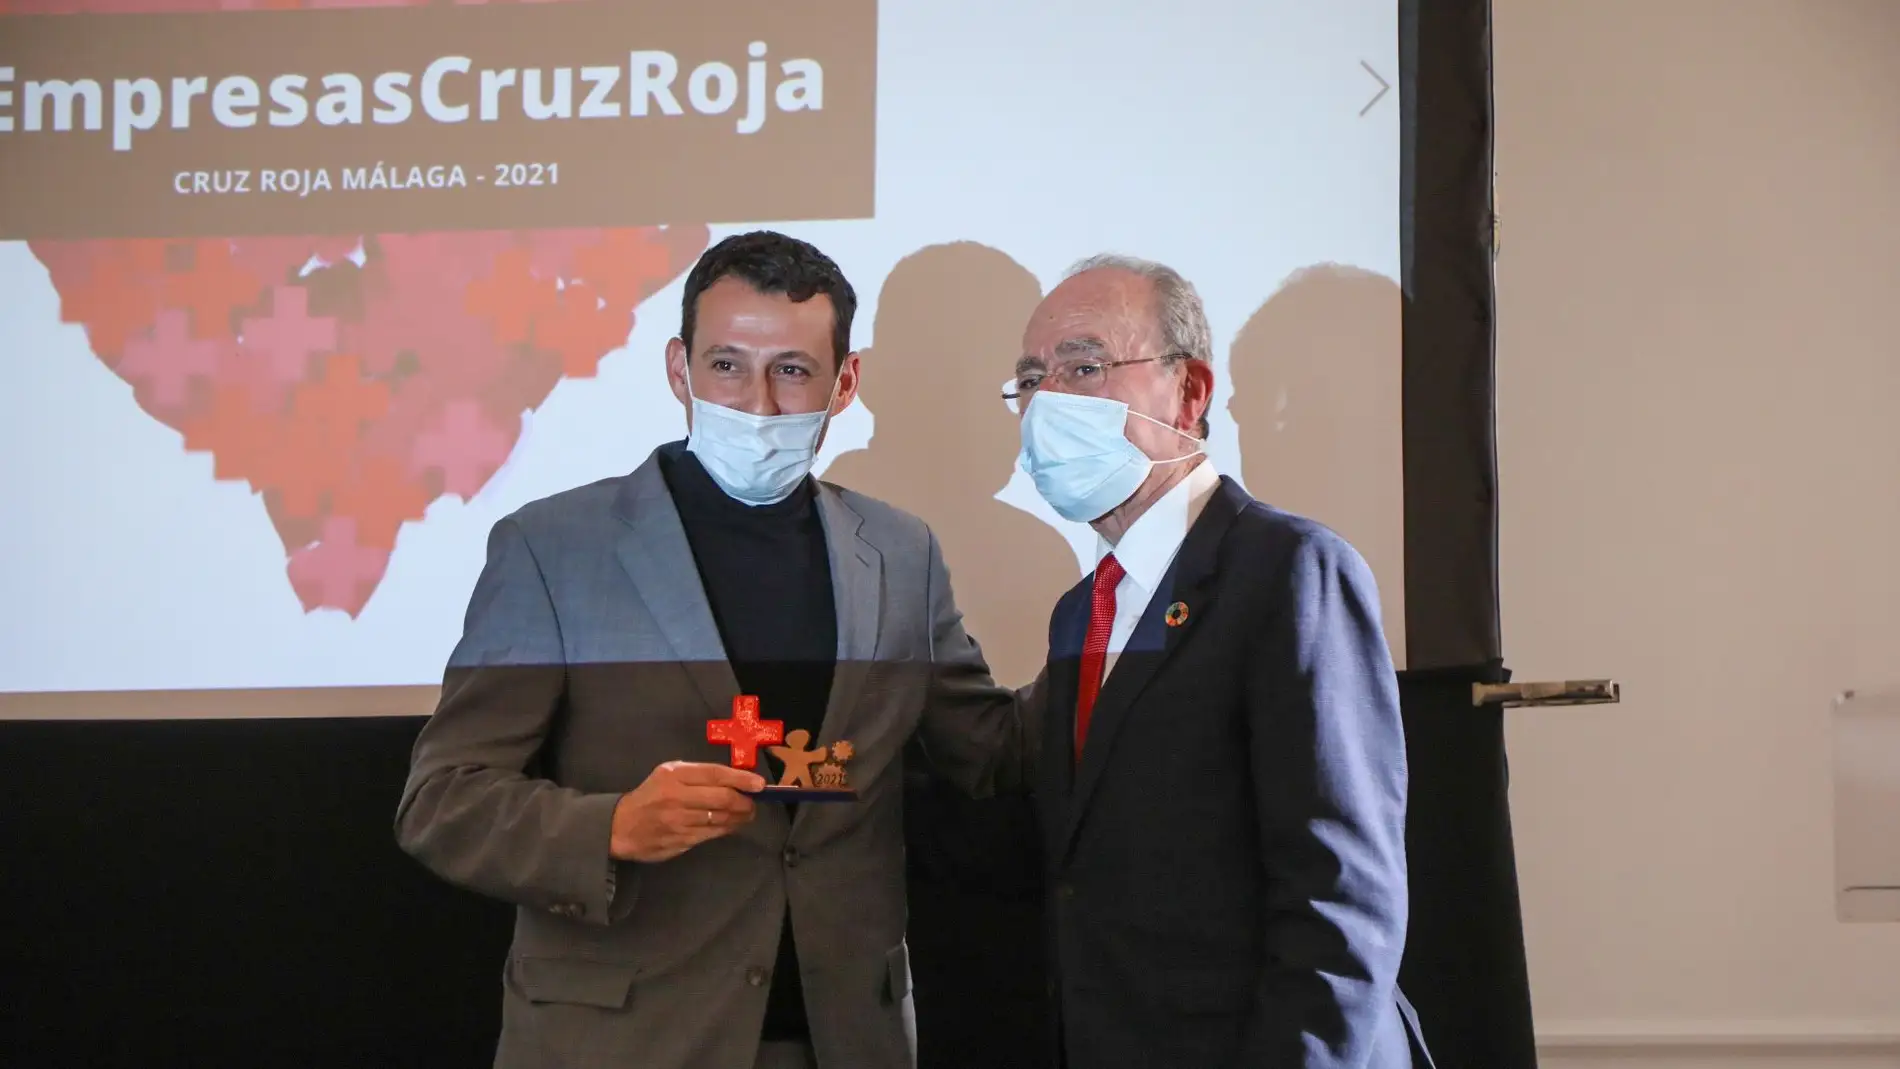 Brisa Festival recibe el premio ‘Empresas Cruz Roja 2021’